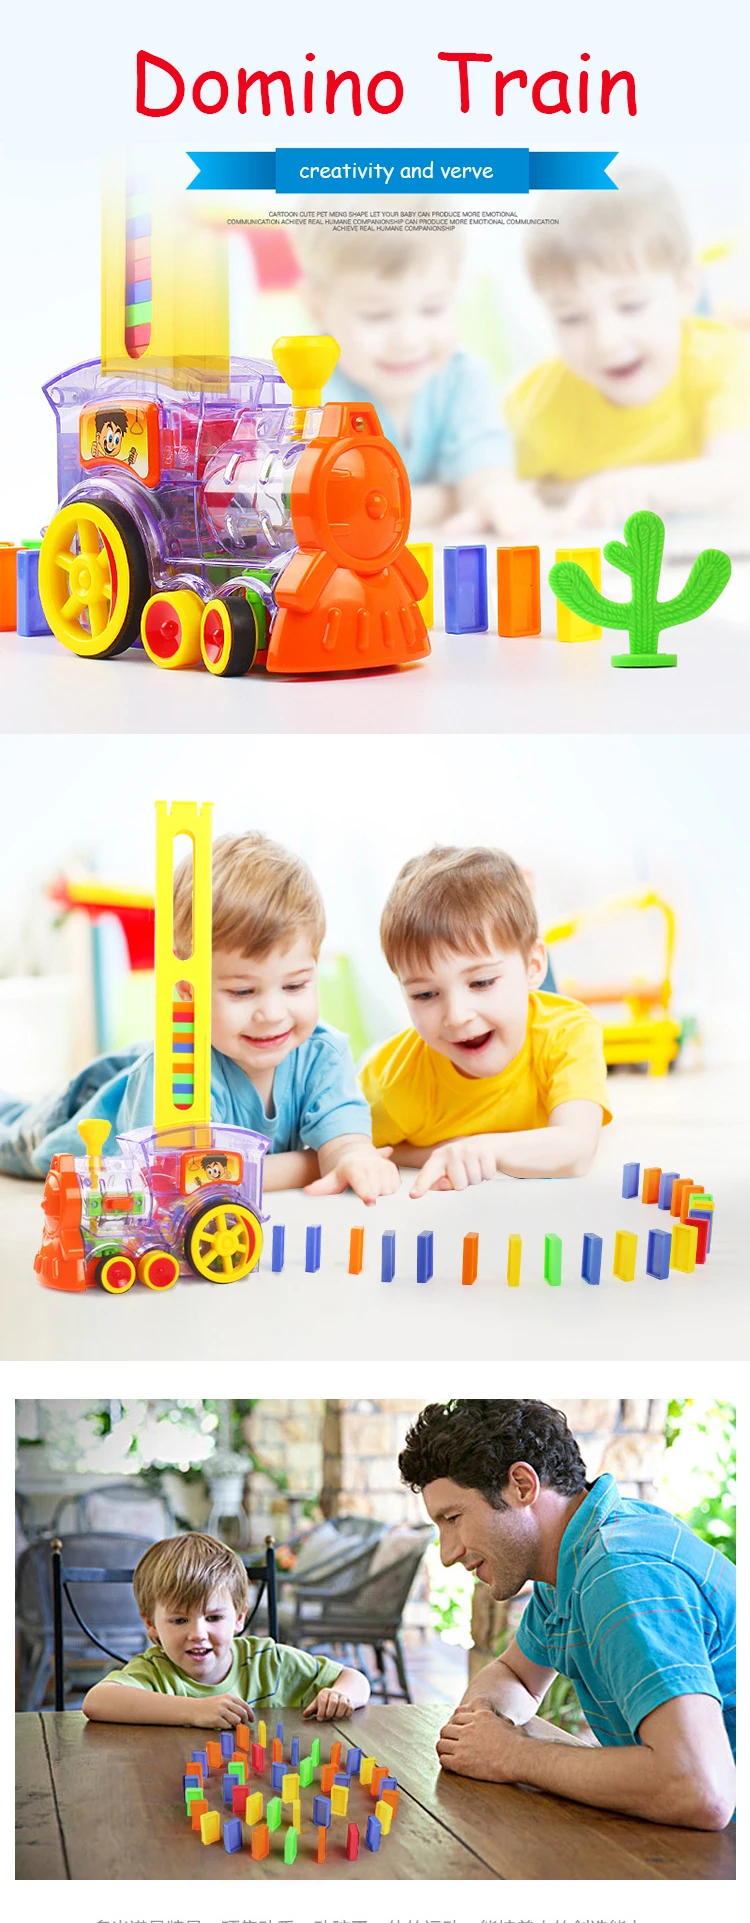 22 см домино поезд модель игрушки автоматические наборы до 60 шт красочные домино блоки игра с загрузочным картриджем игрушки подарок моторизованный